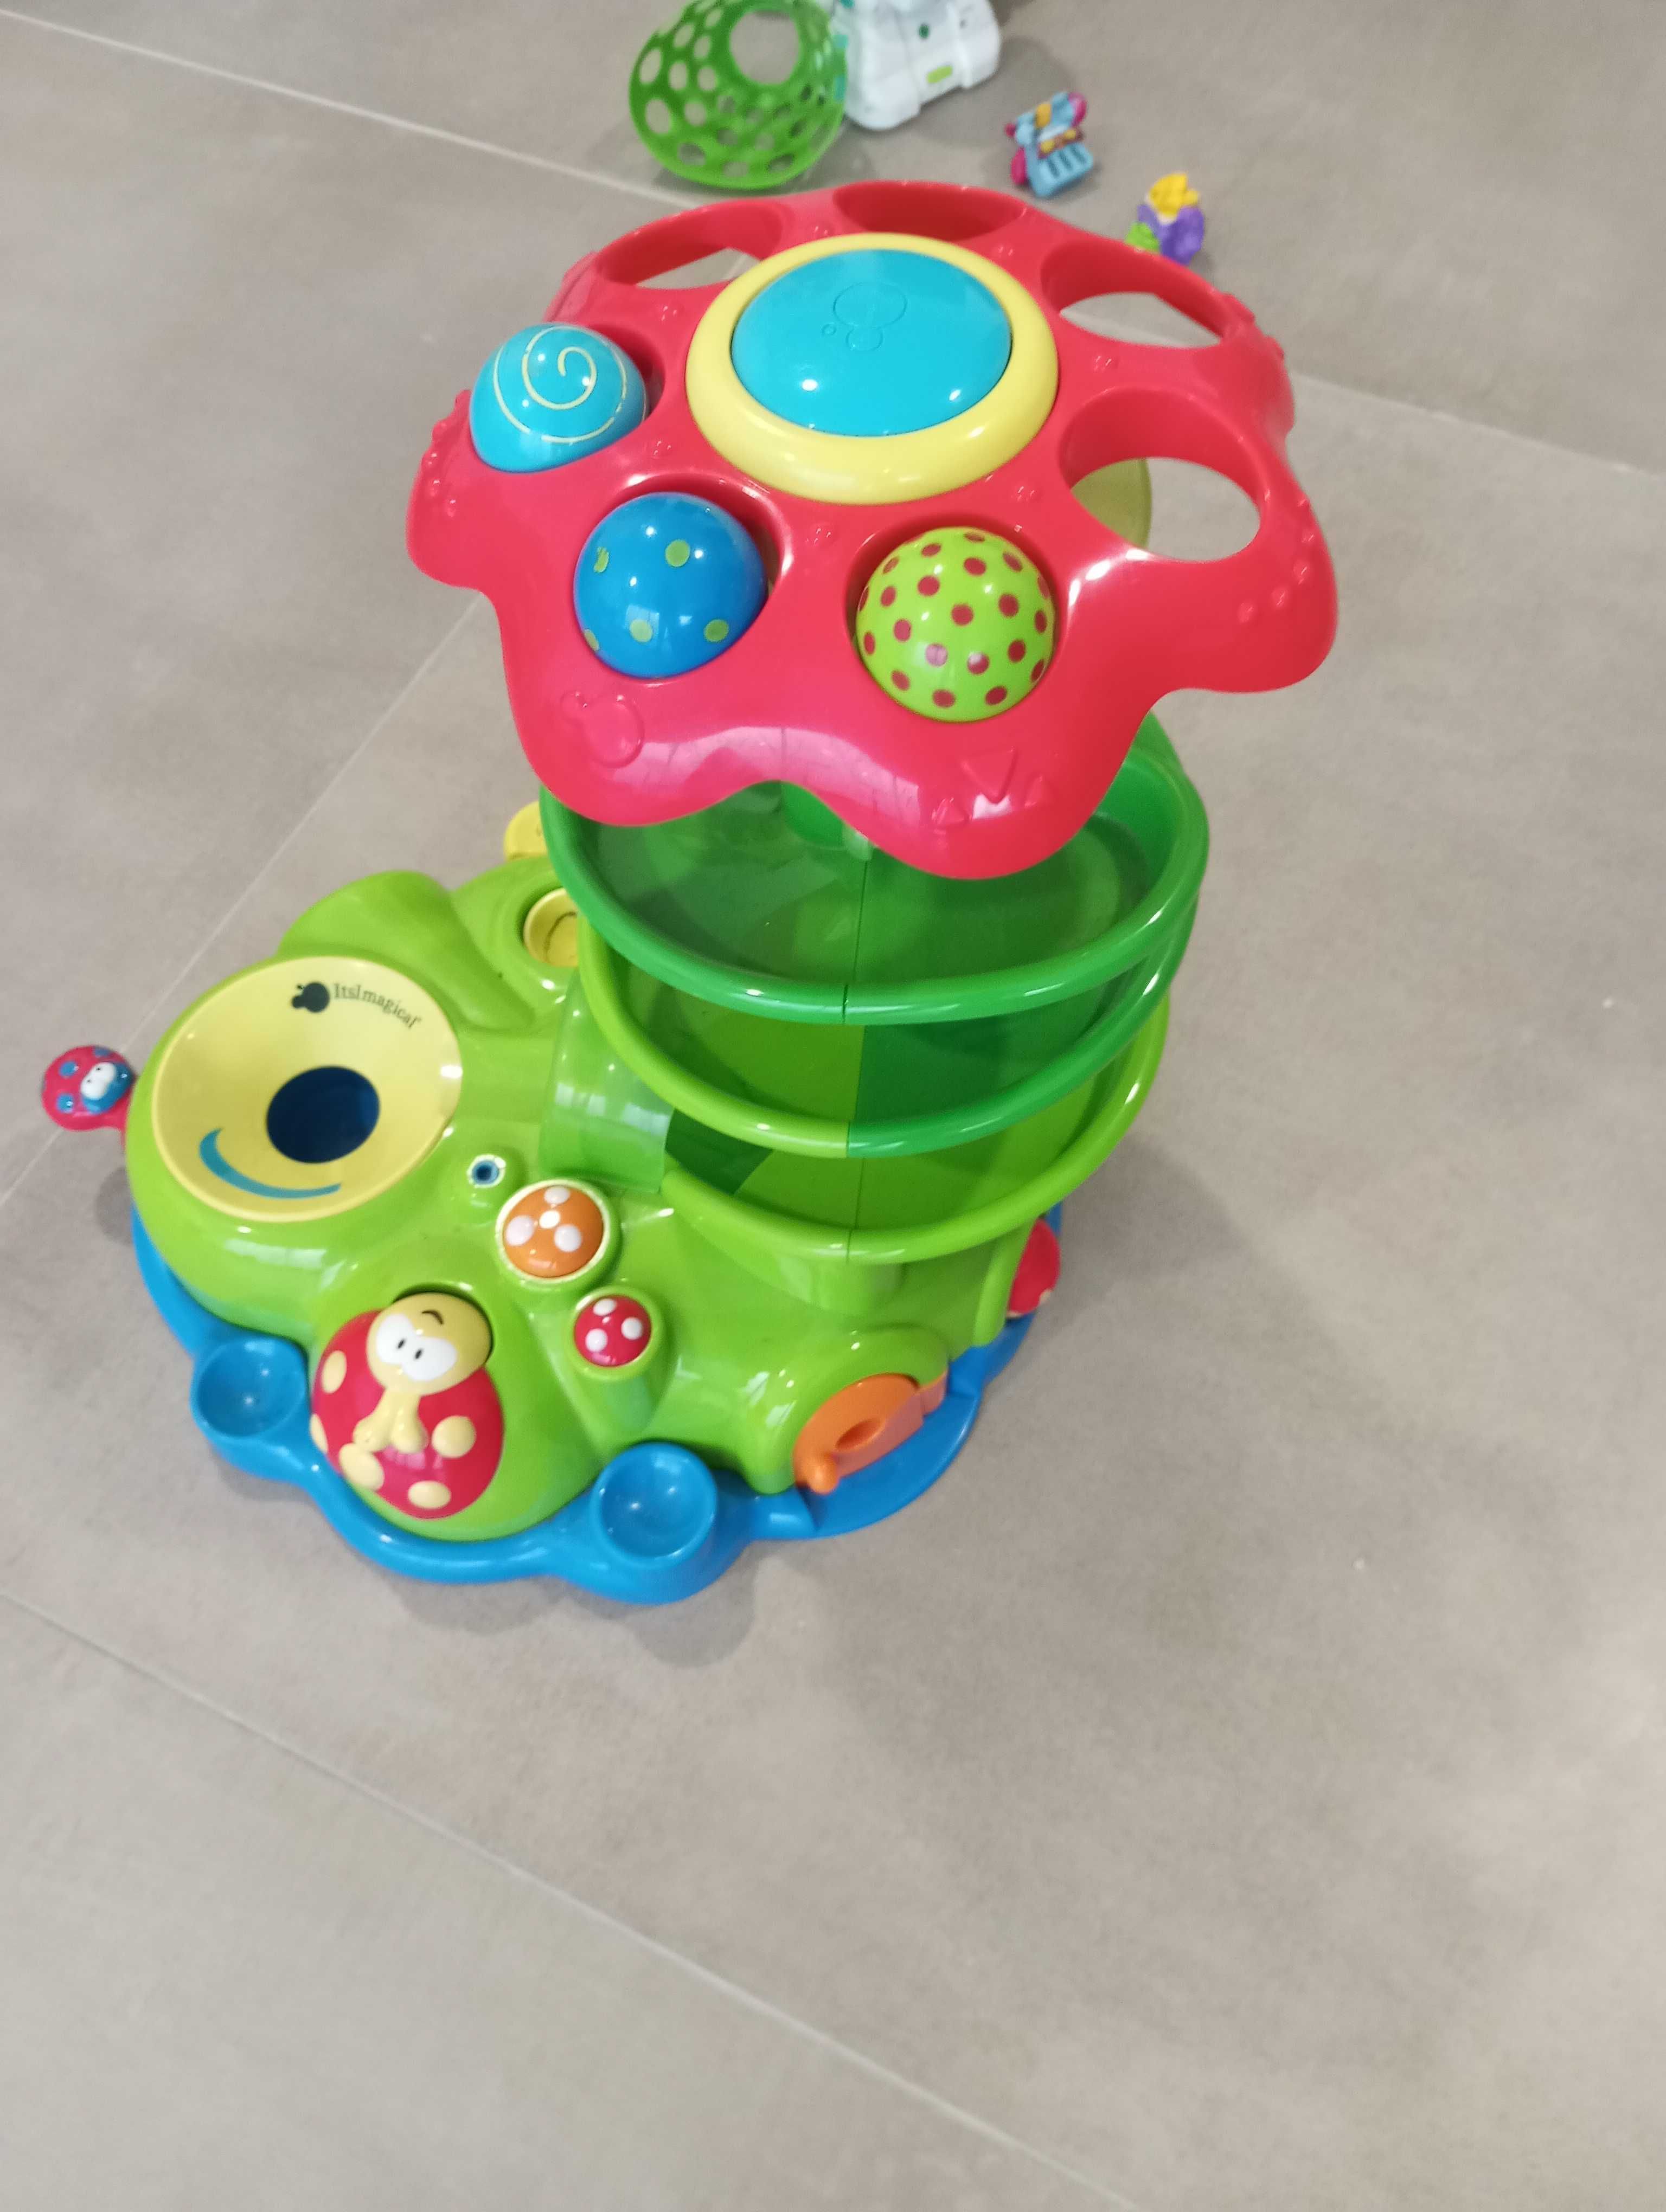 Brinquedo criança lagarta - com 3 bolas